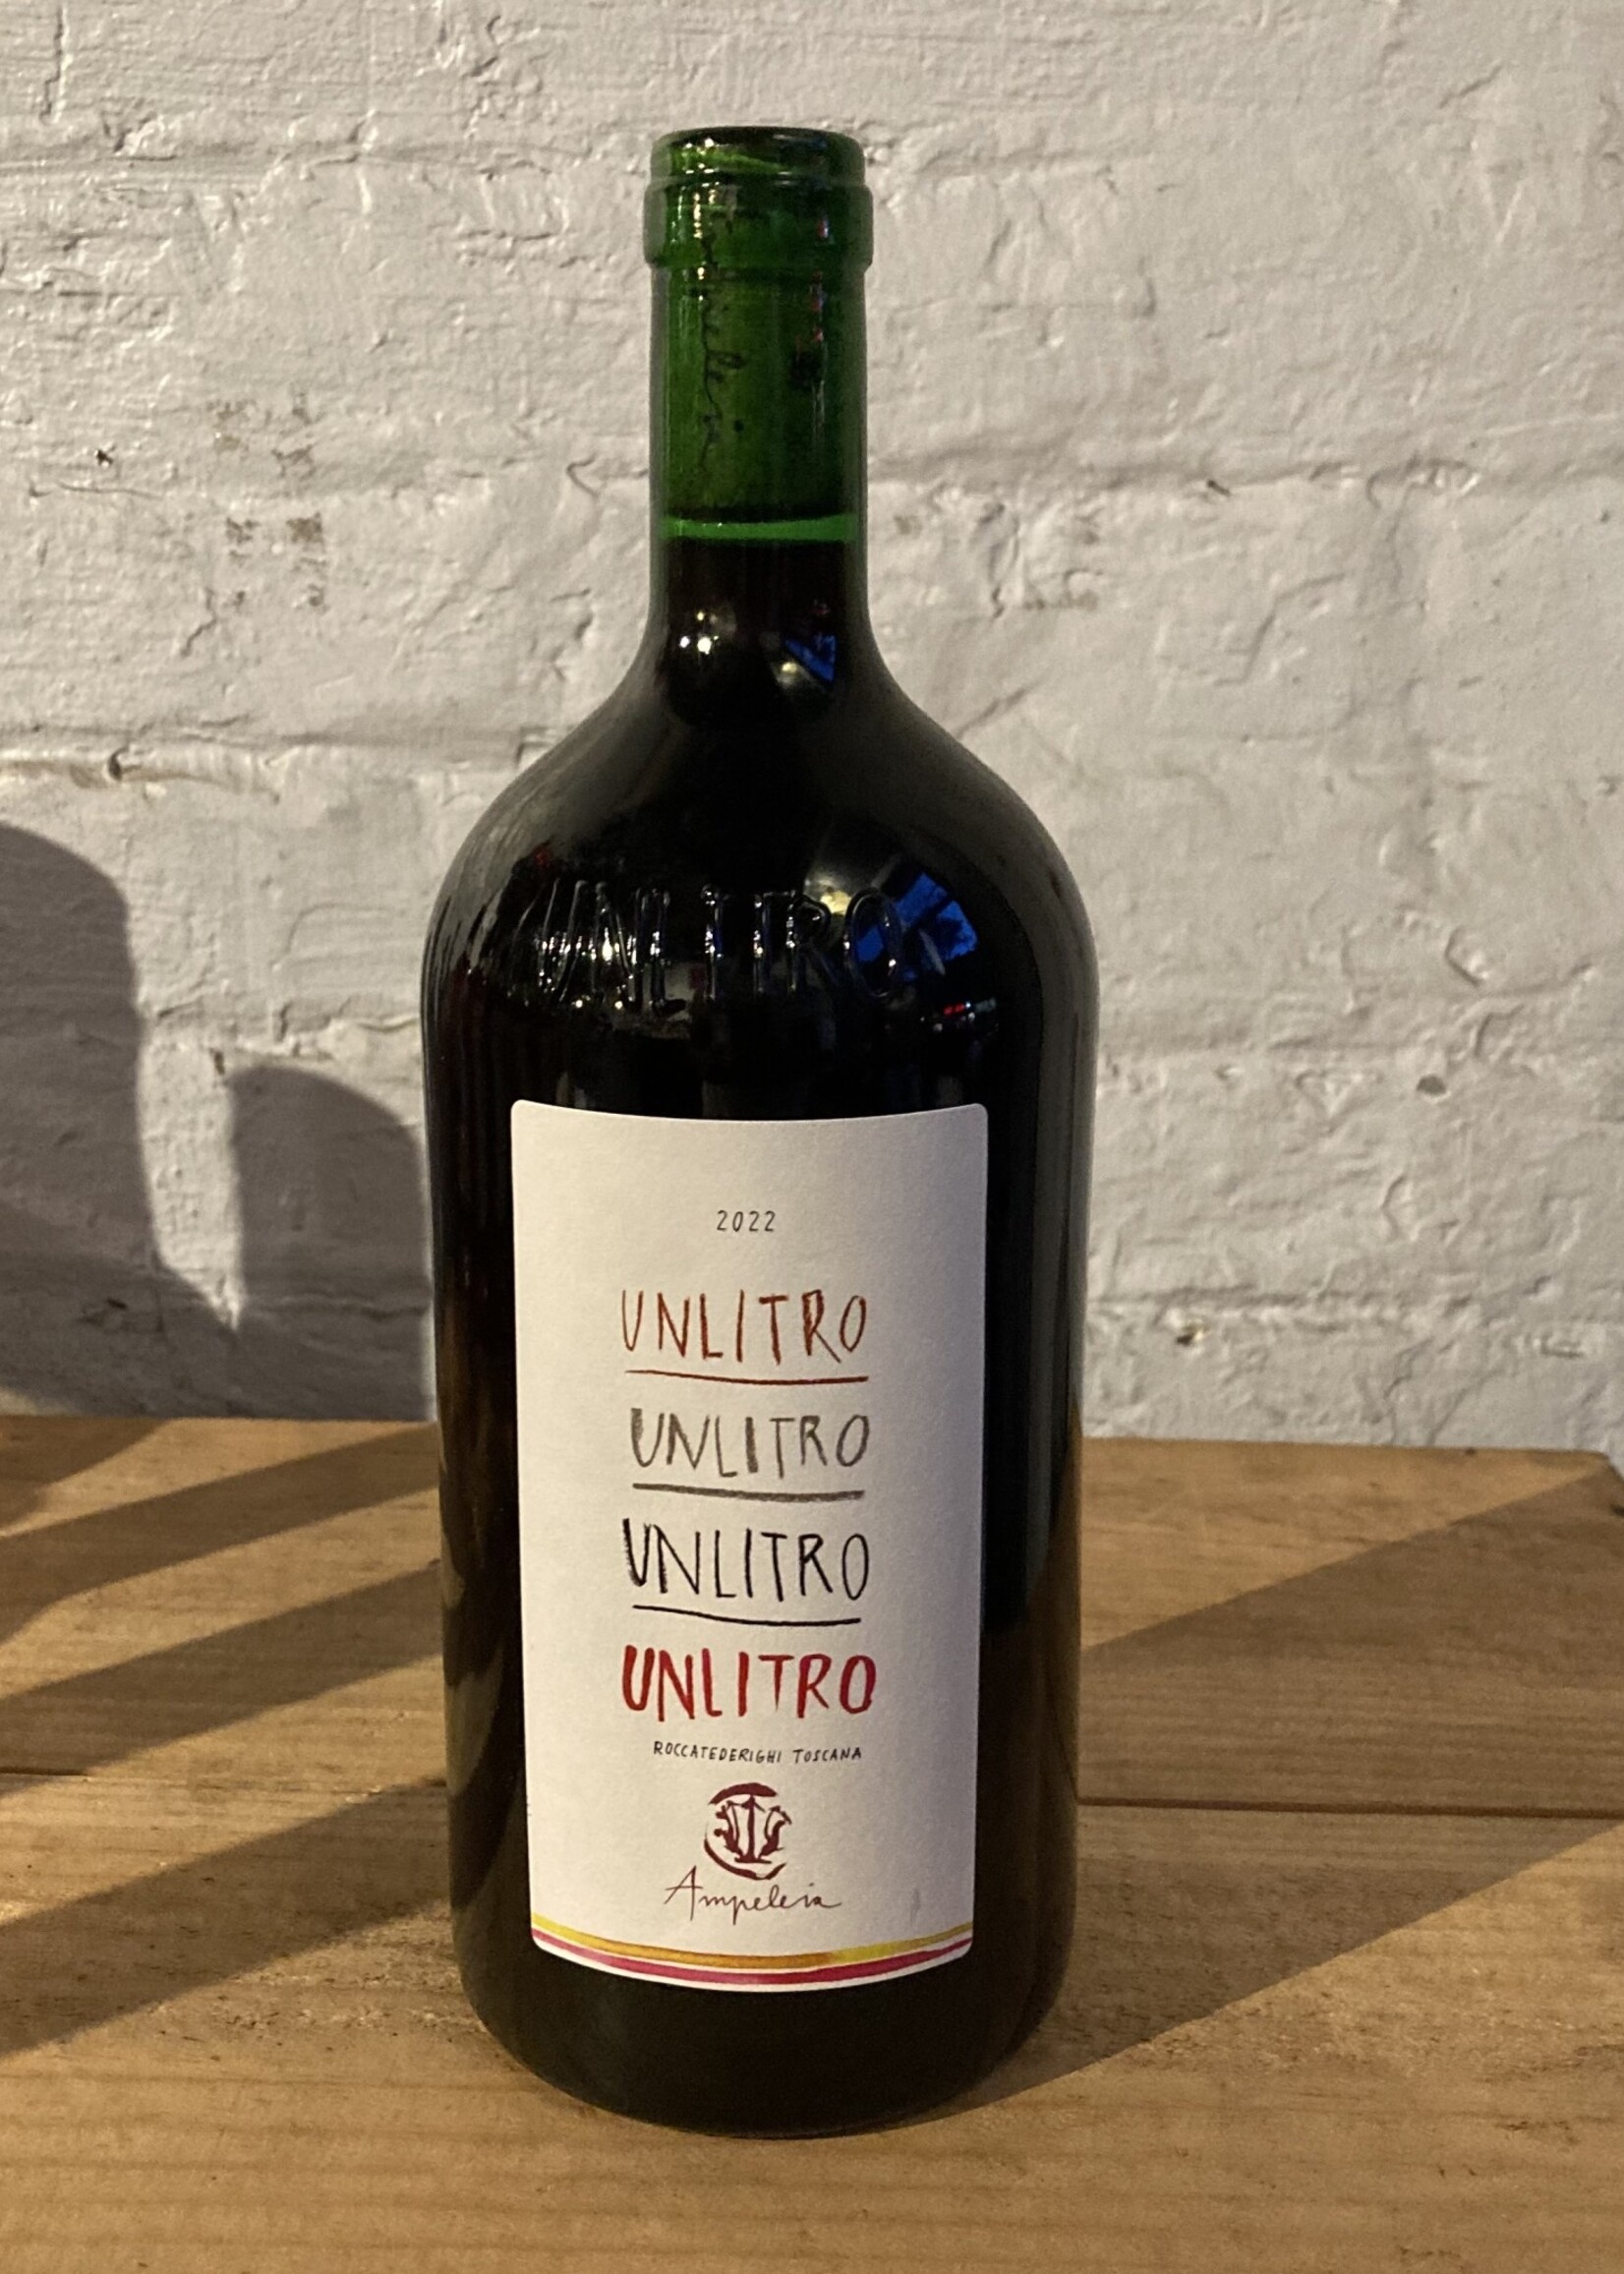 Wine 2022 Ampeleia Costa Toscana Unlitro - Tuscany, Italy (1L)